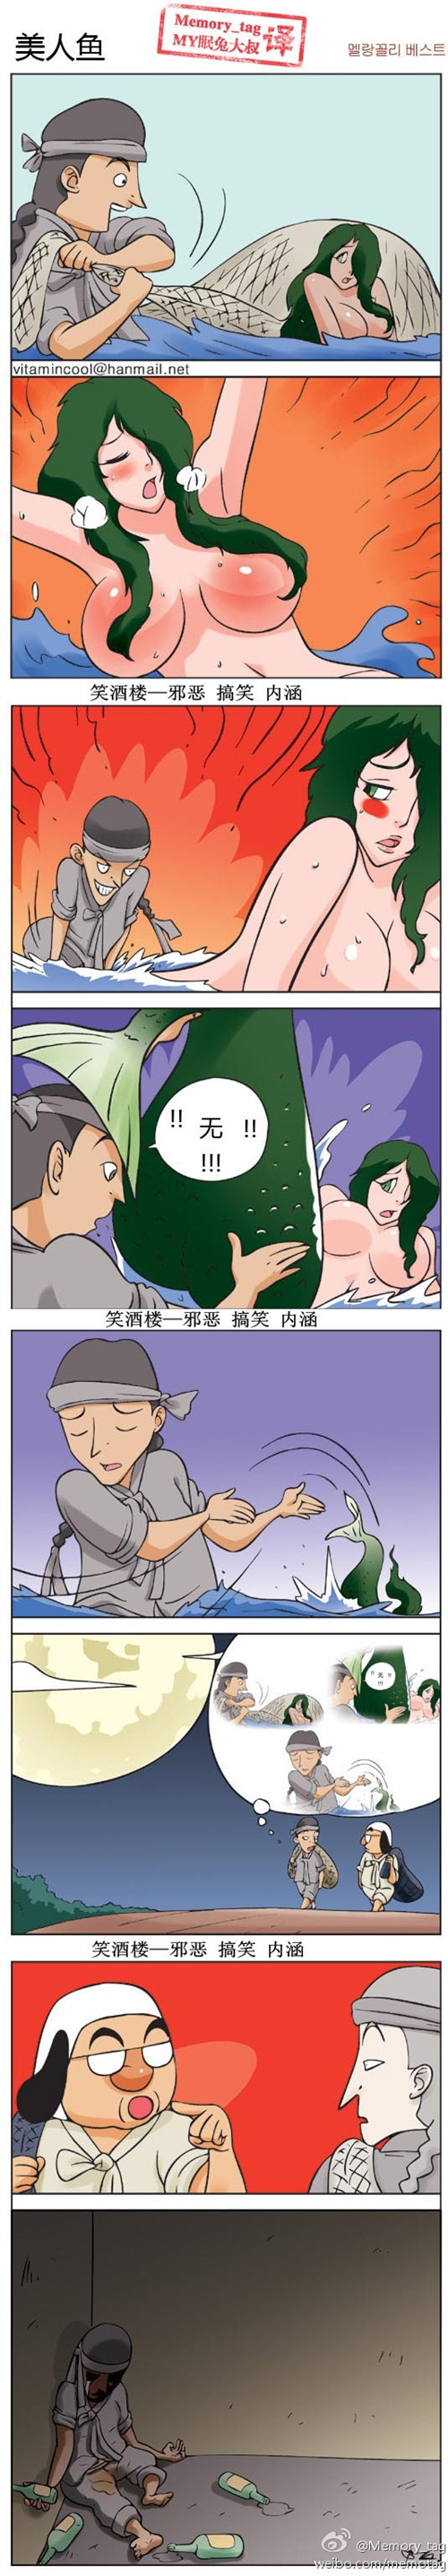 污漫画|韩国邪恶小漫画之美人鱼